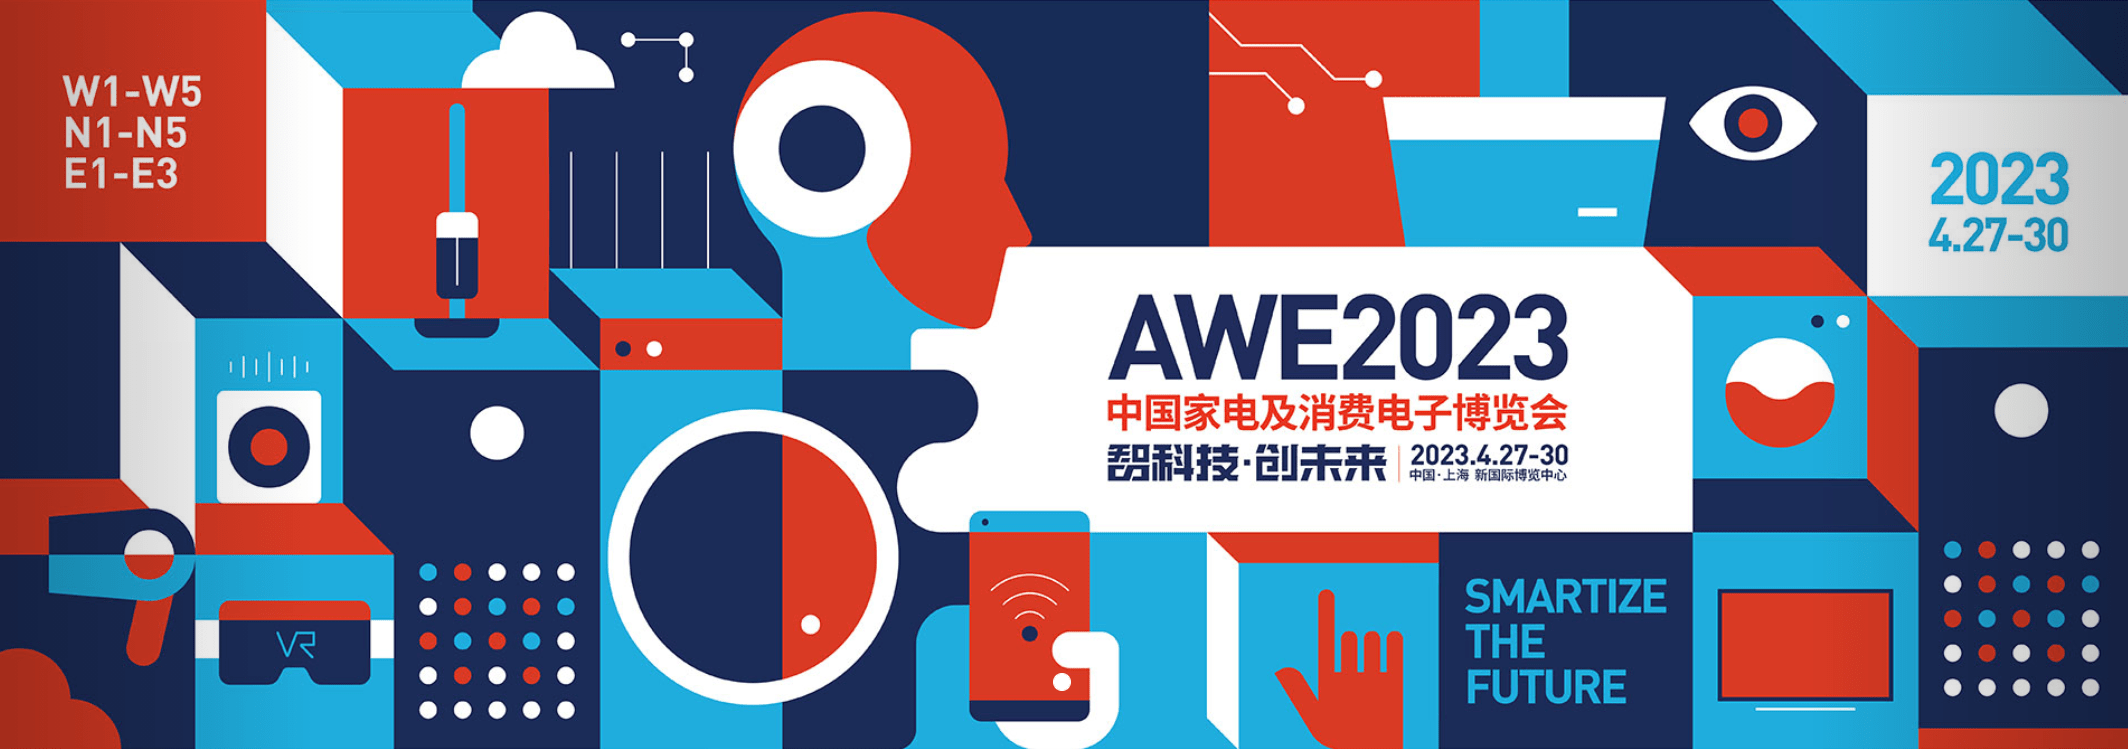 飞利浦智能灯苹果版:AWE2023即将开幕，见证智能家居行业的下一个十年